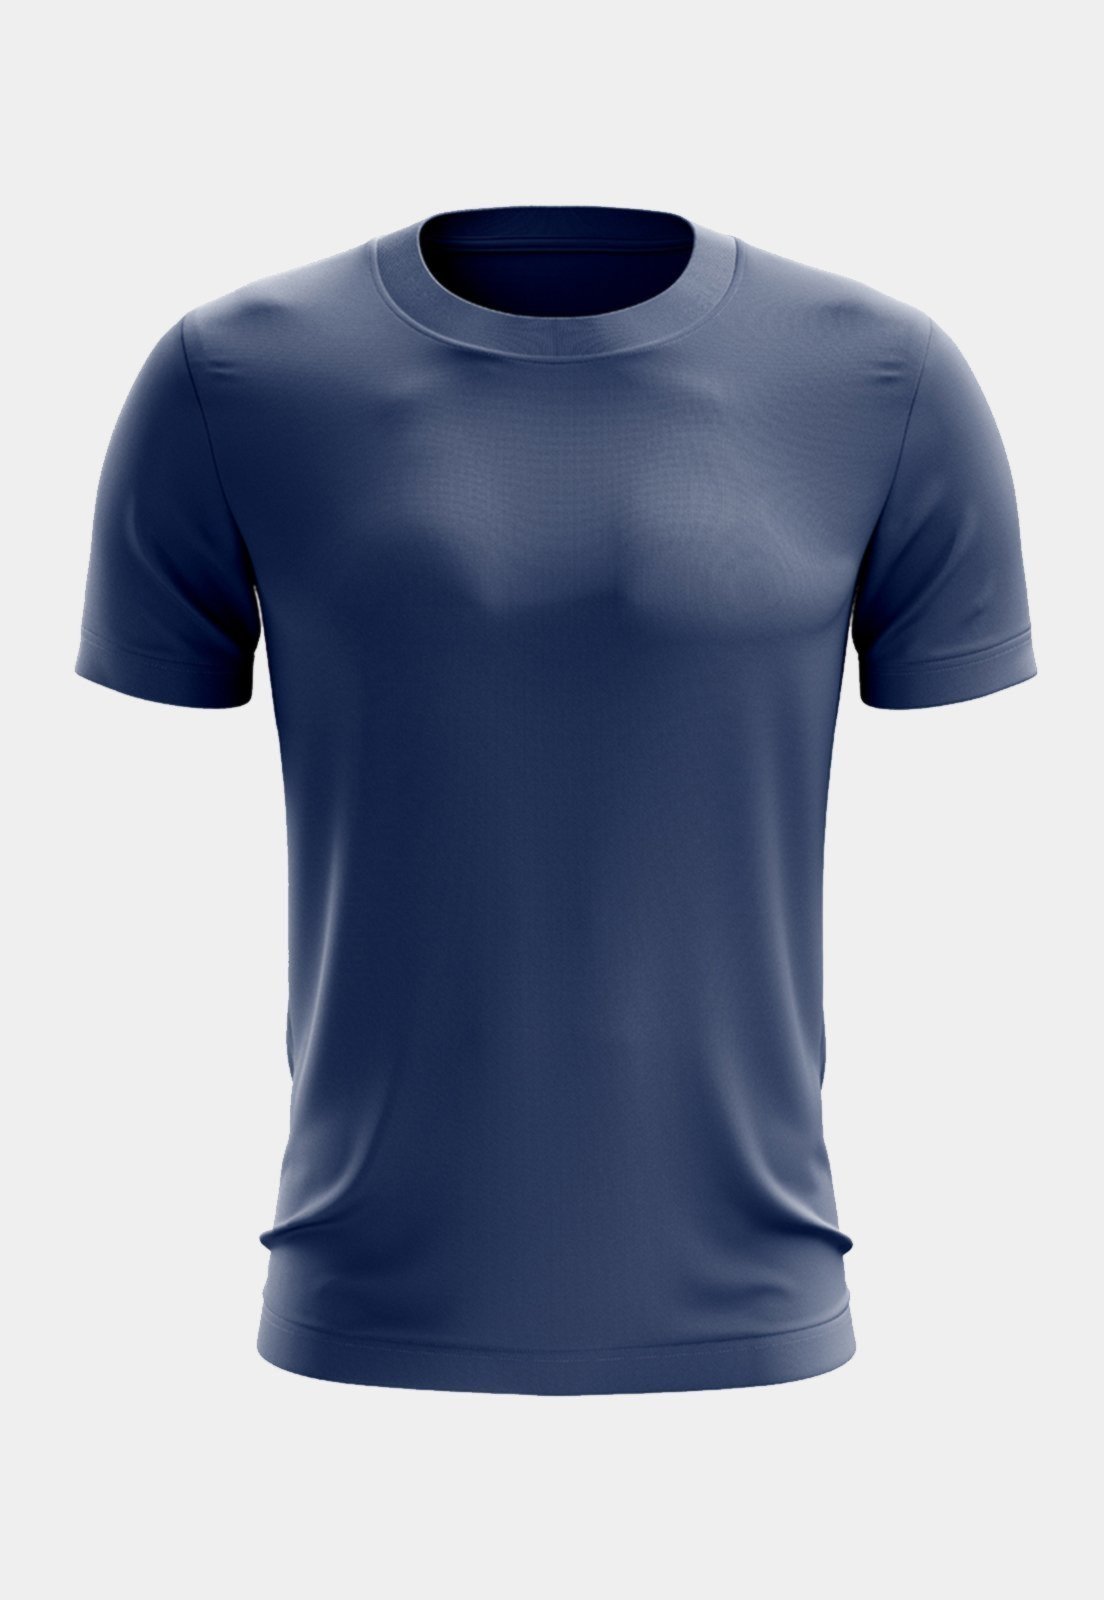 Camisa Masculina Dry Fit Premium Camiseta Academia Blusa